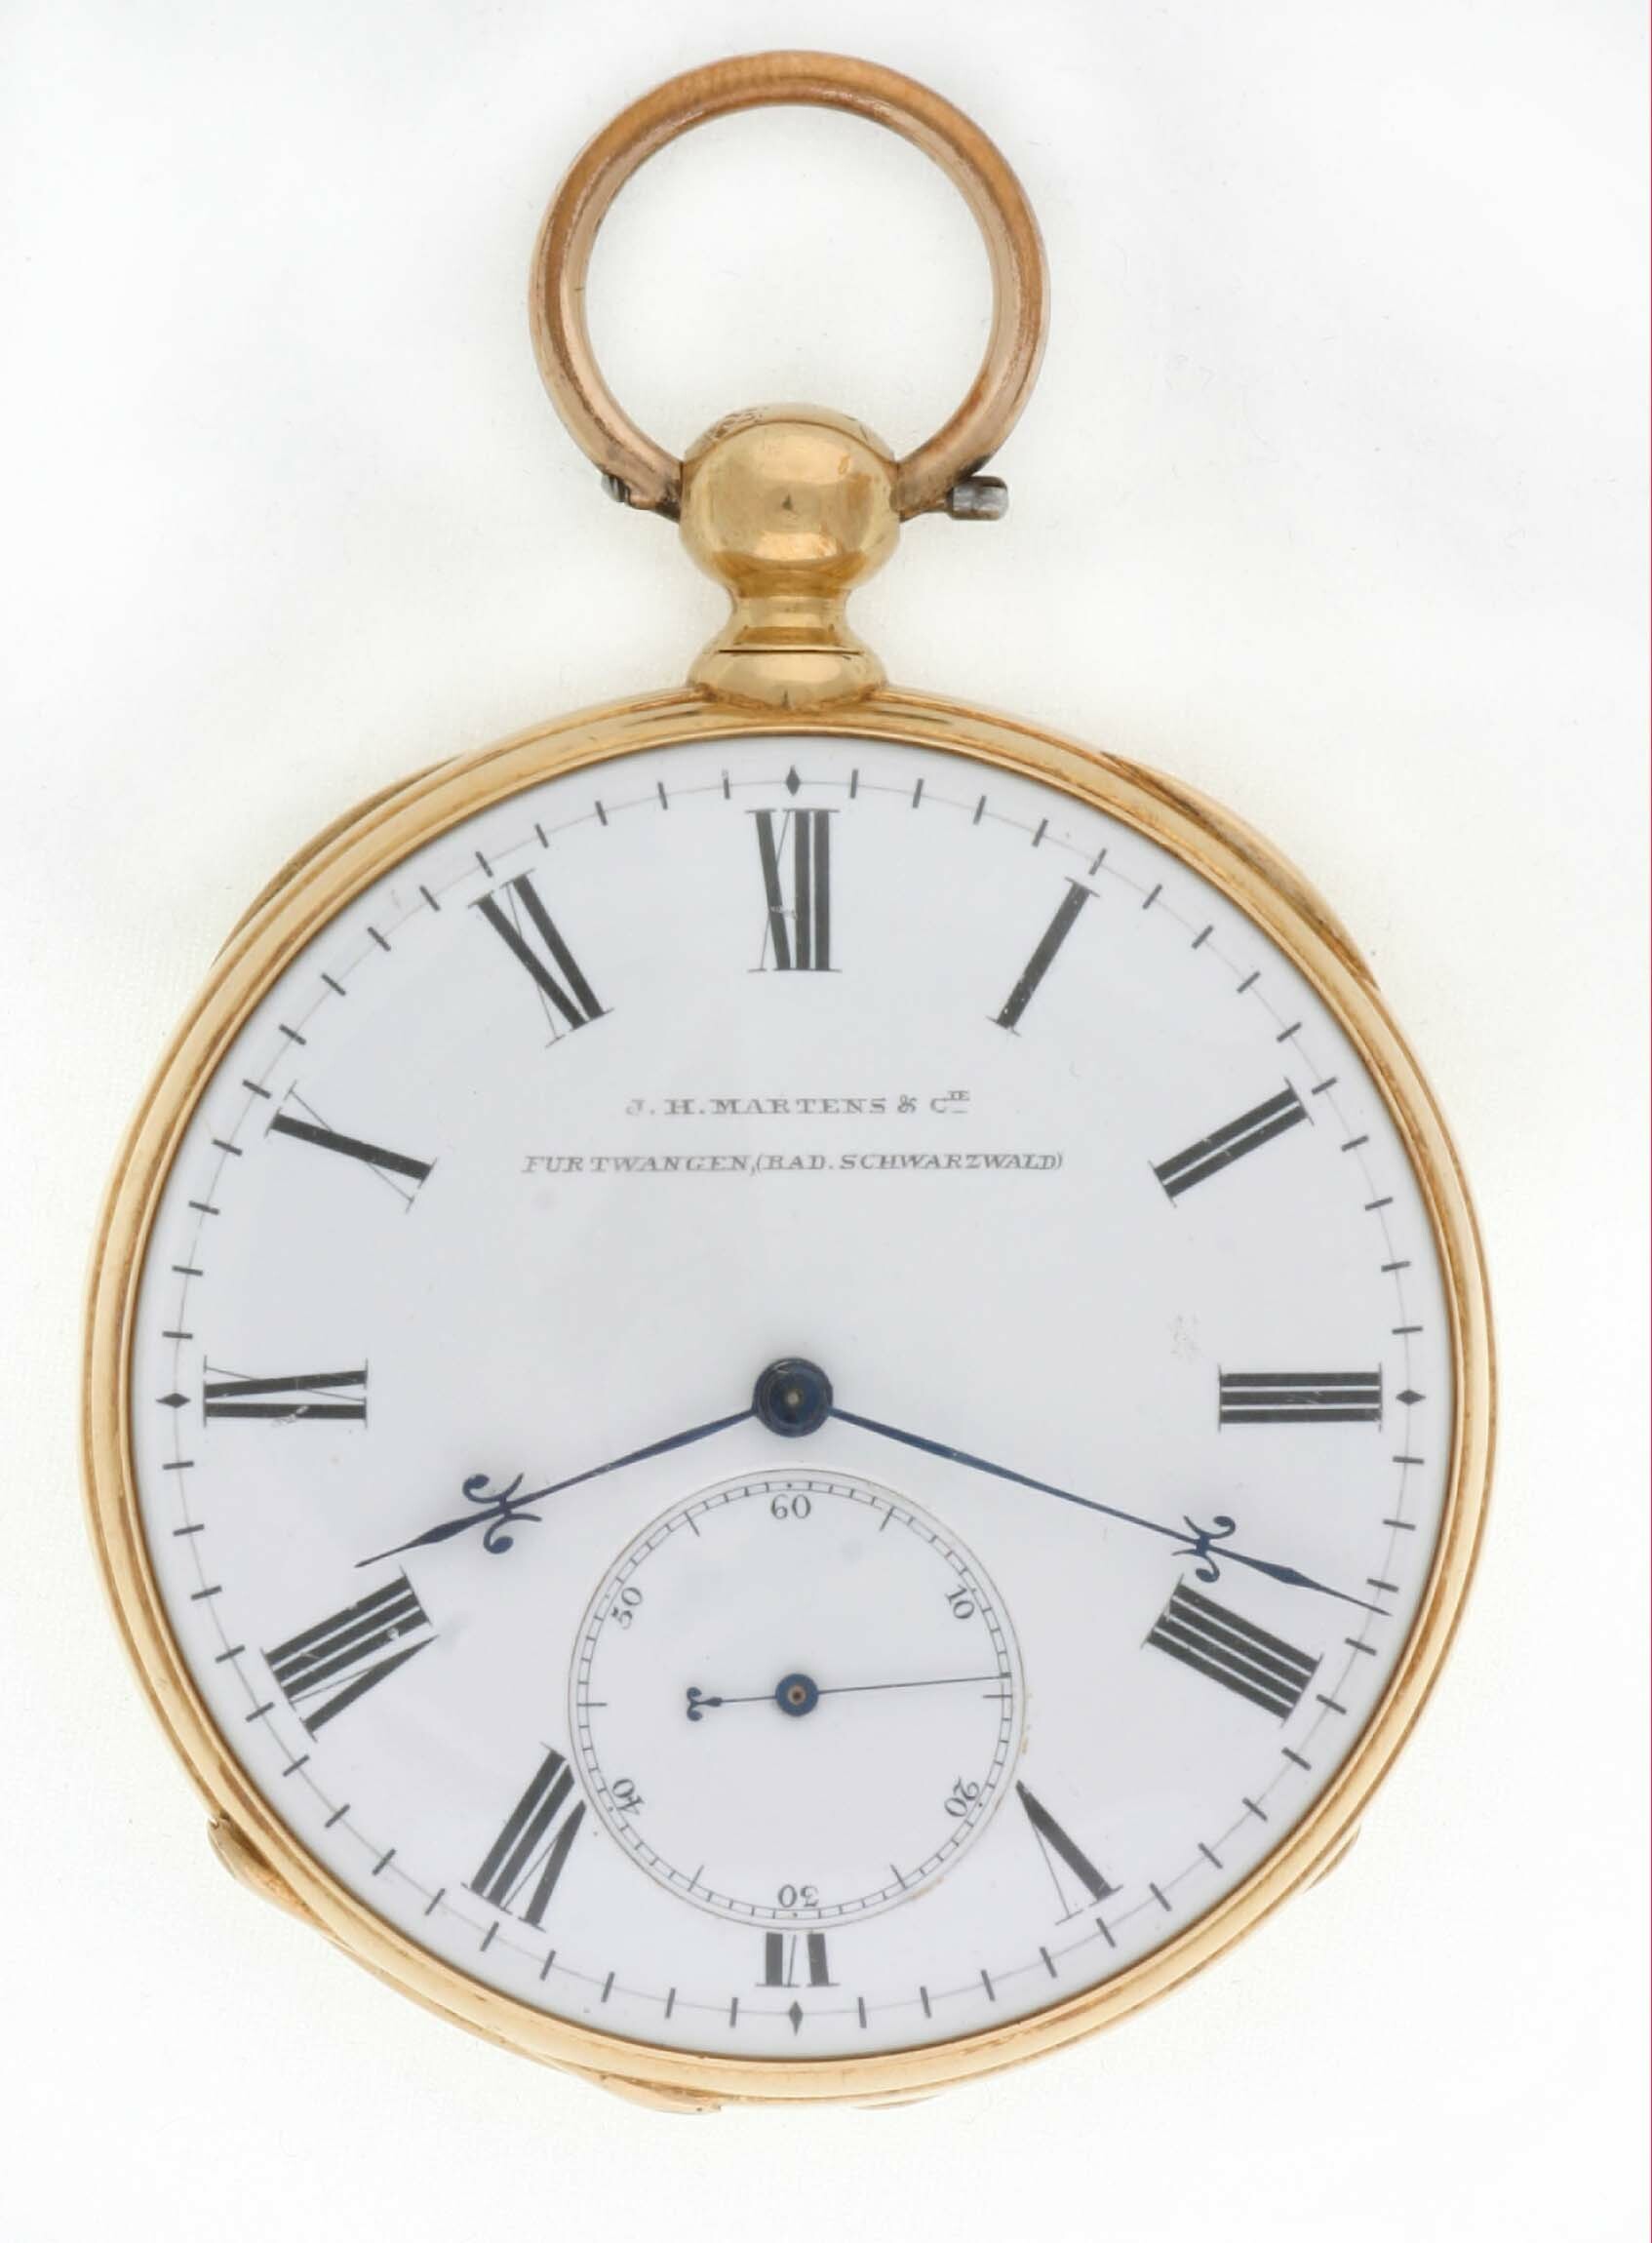 Taschenuhr, Jess-Hans Martens, Furtwangen, 1858-1867 (Deutsches Uhrenmuseum CC BY-SA)